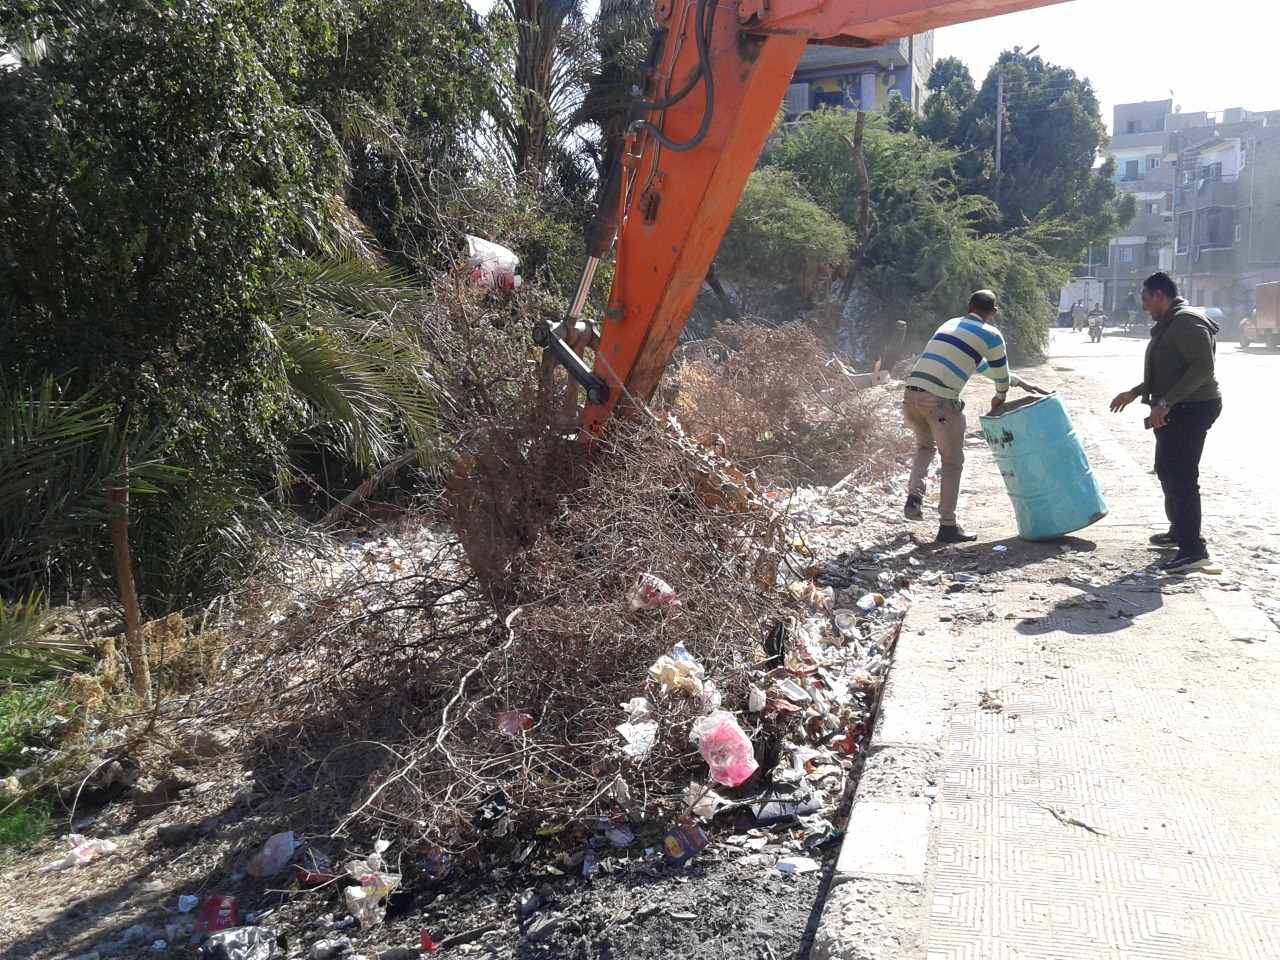   بالصور|| لليوم الرابع إستمرار أعمال النظافة بقرية الحميدات لمبادرة «بيكيا ميد» تحت شعار «بايدينا نجملها»